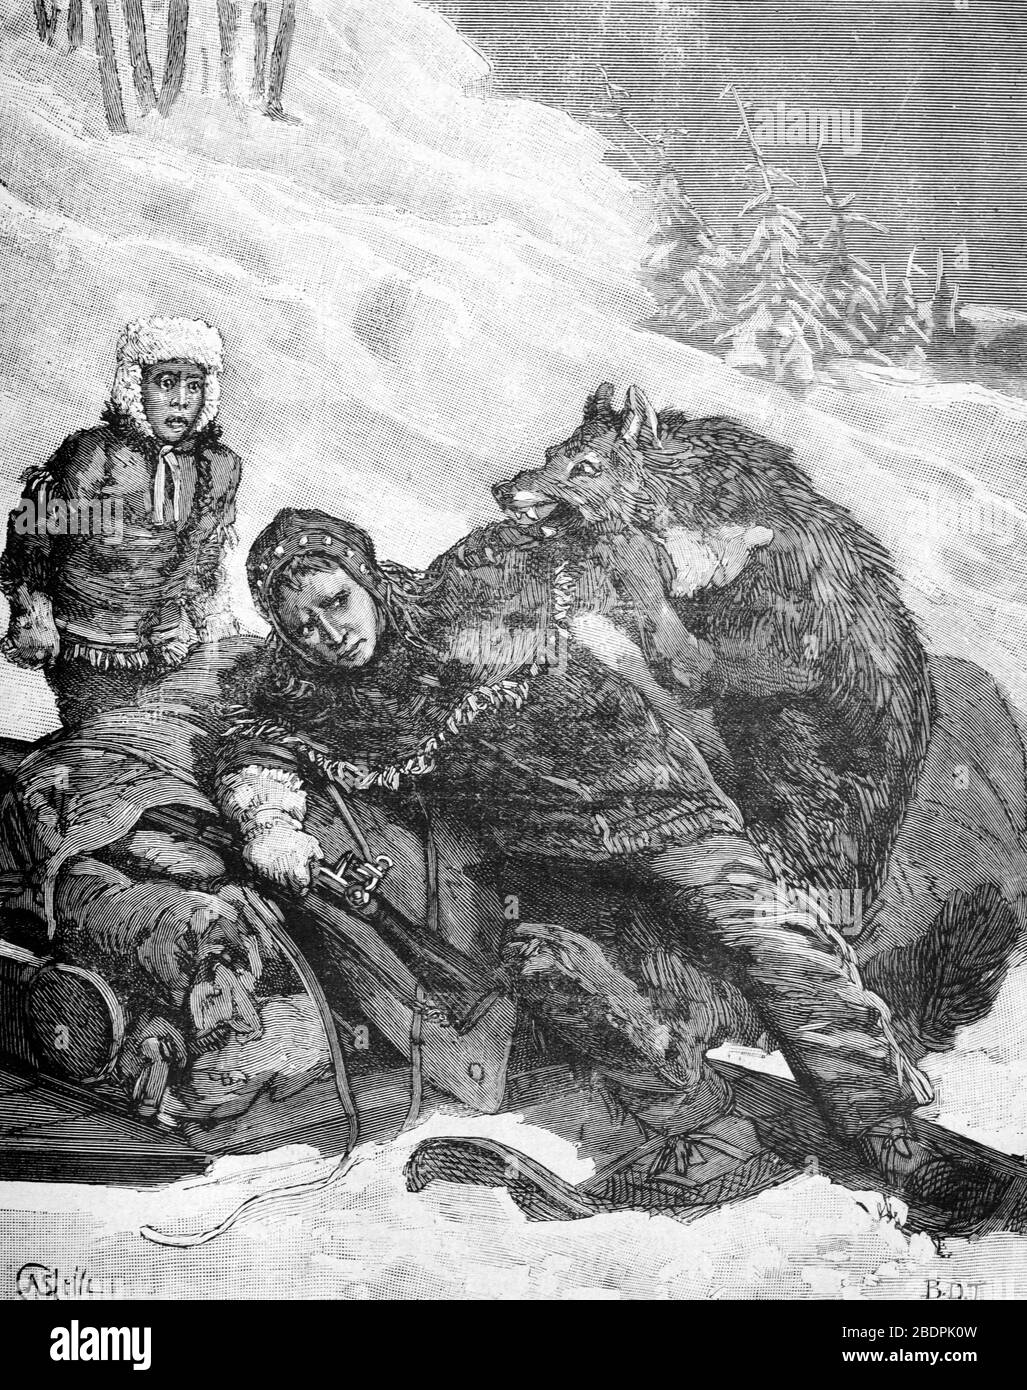 Attacco di lupo grigio, lupus di Canis, in Canada. Vintage o Old Illustration o Engraving 1887 Foto Stock